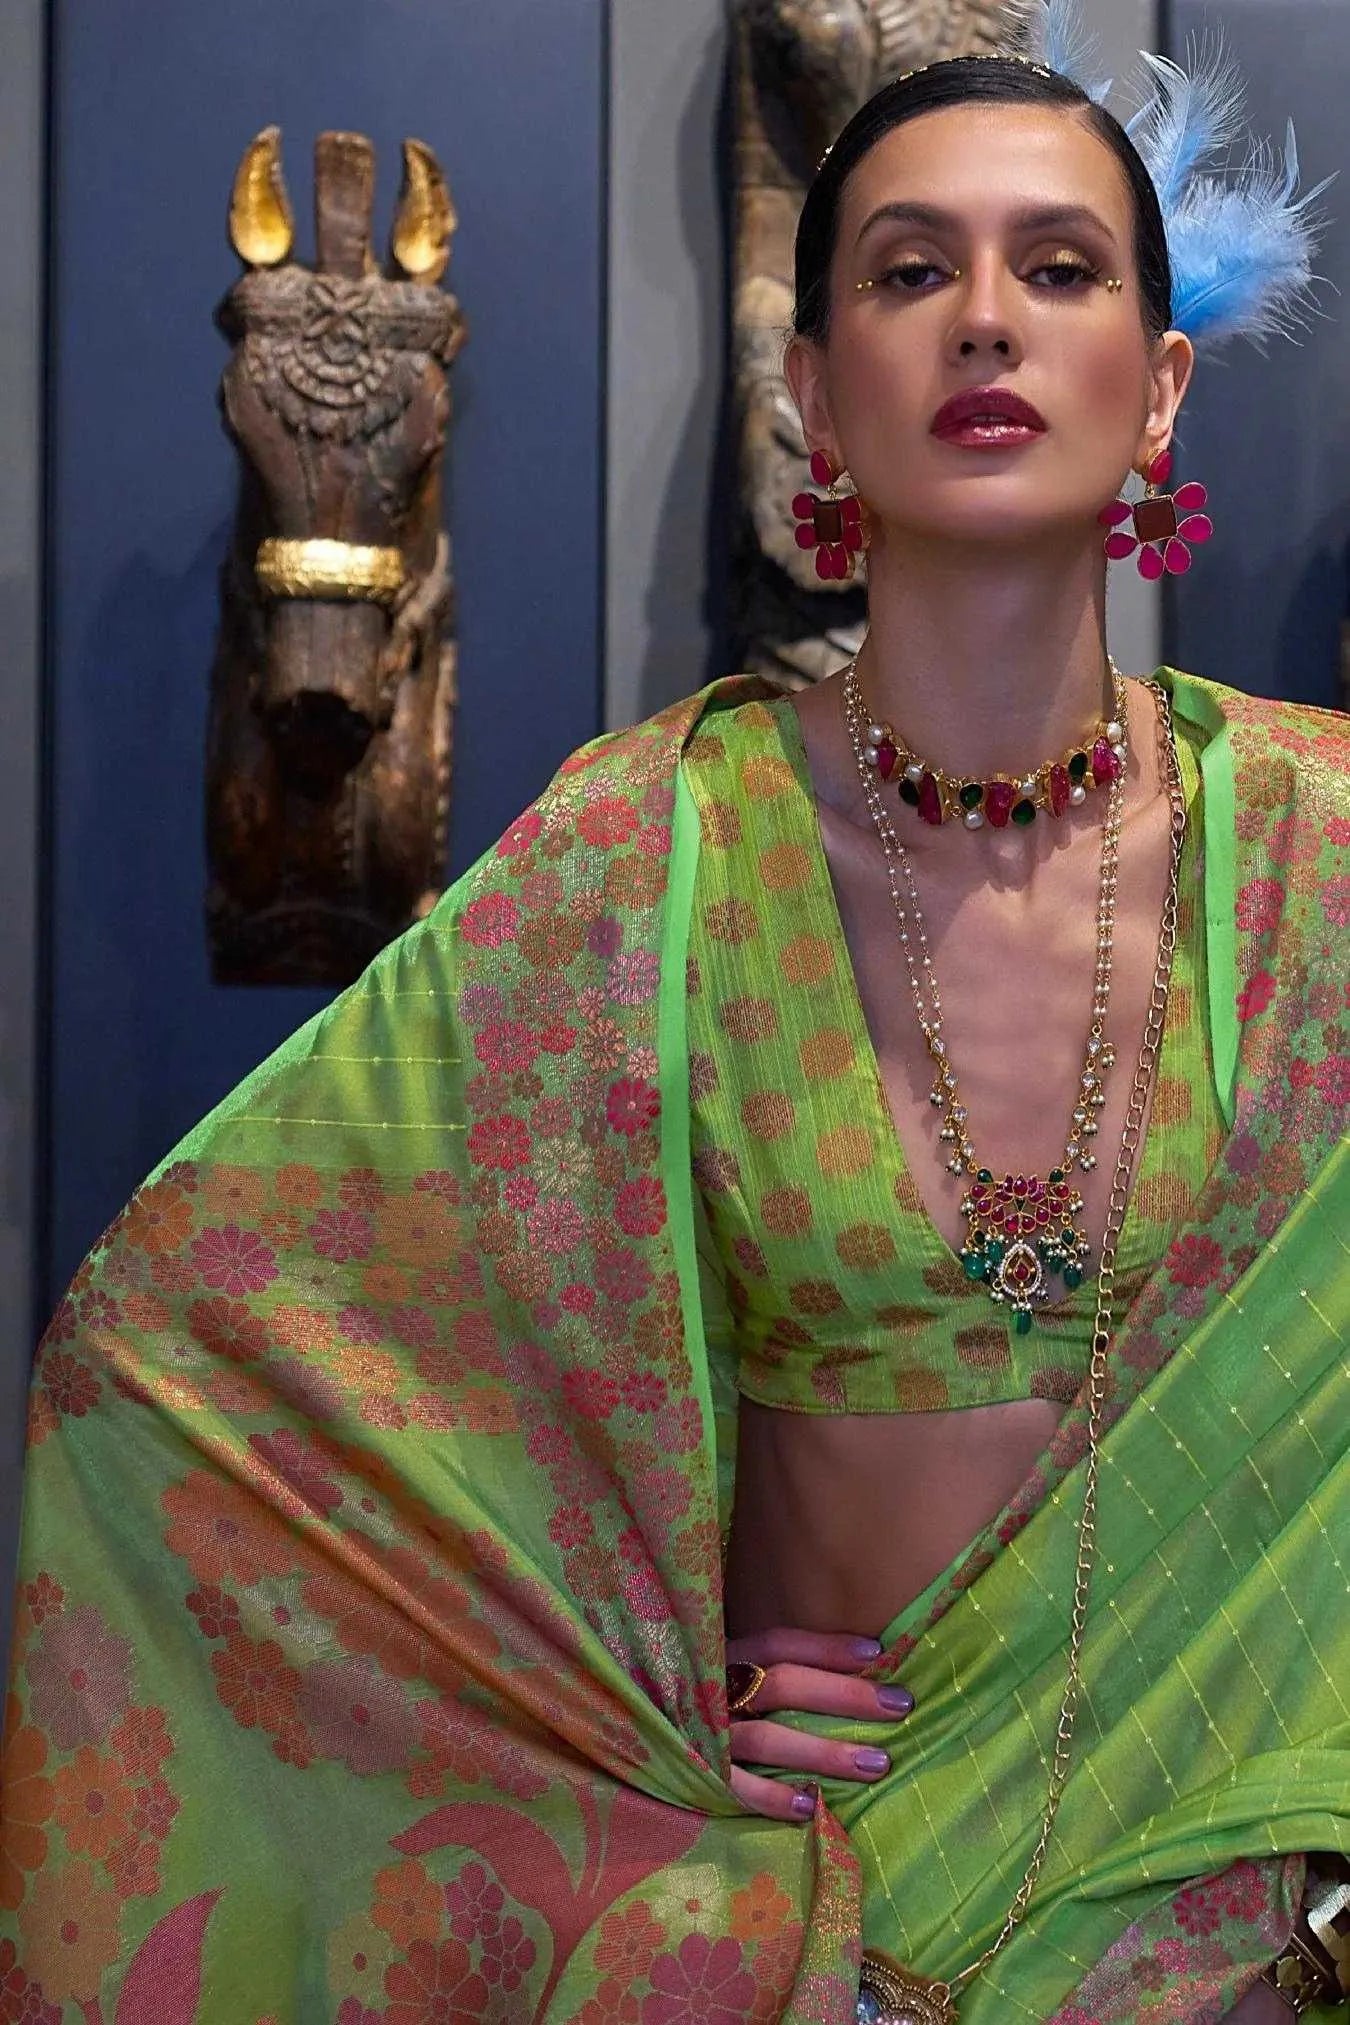 Light Green Colour Zari Woven Bollywood Style Organza Silk Saree